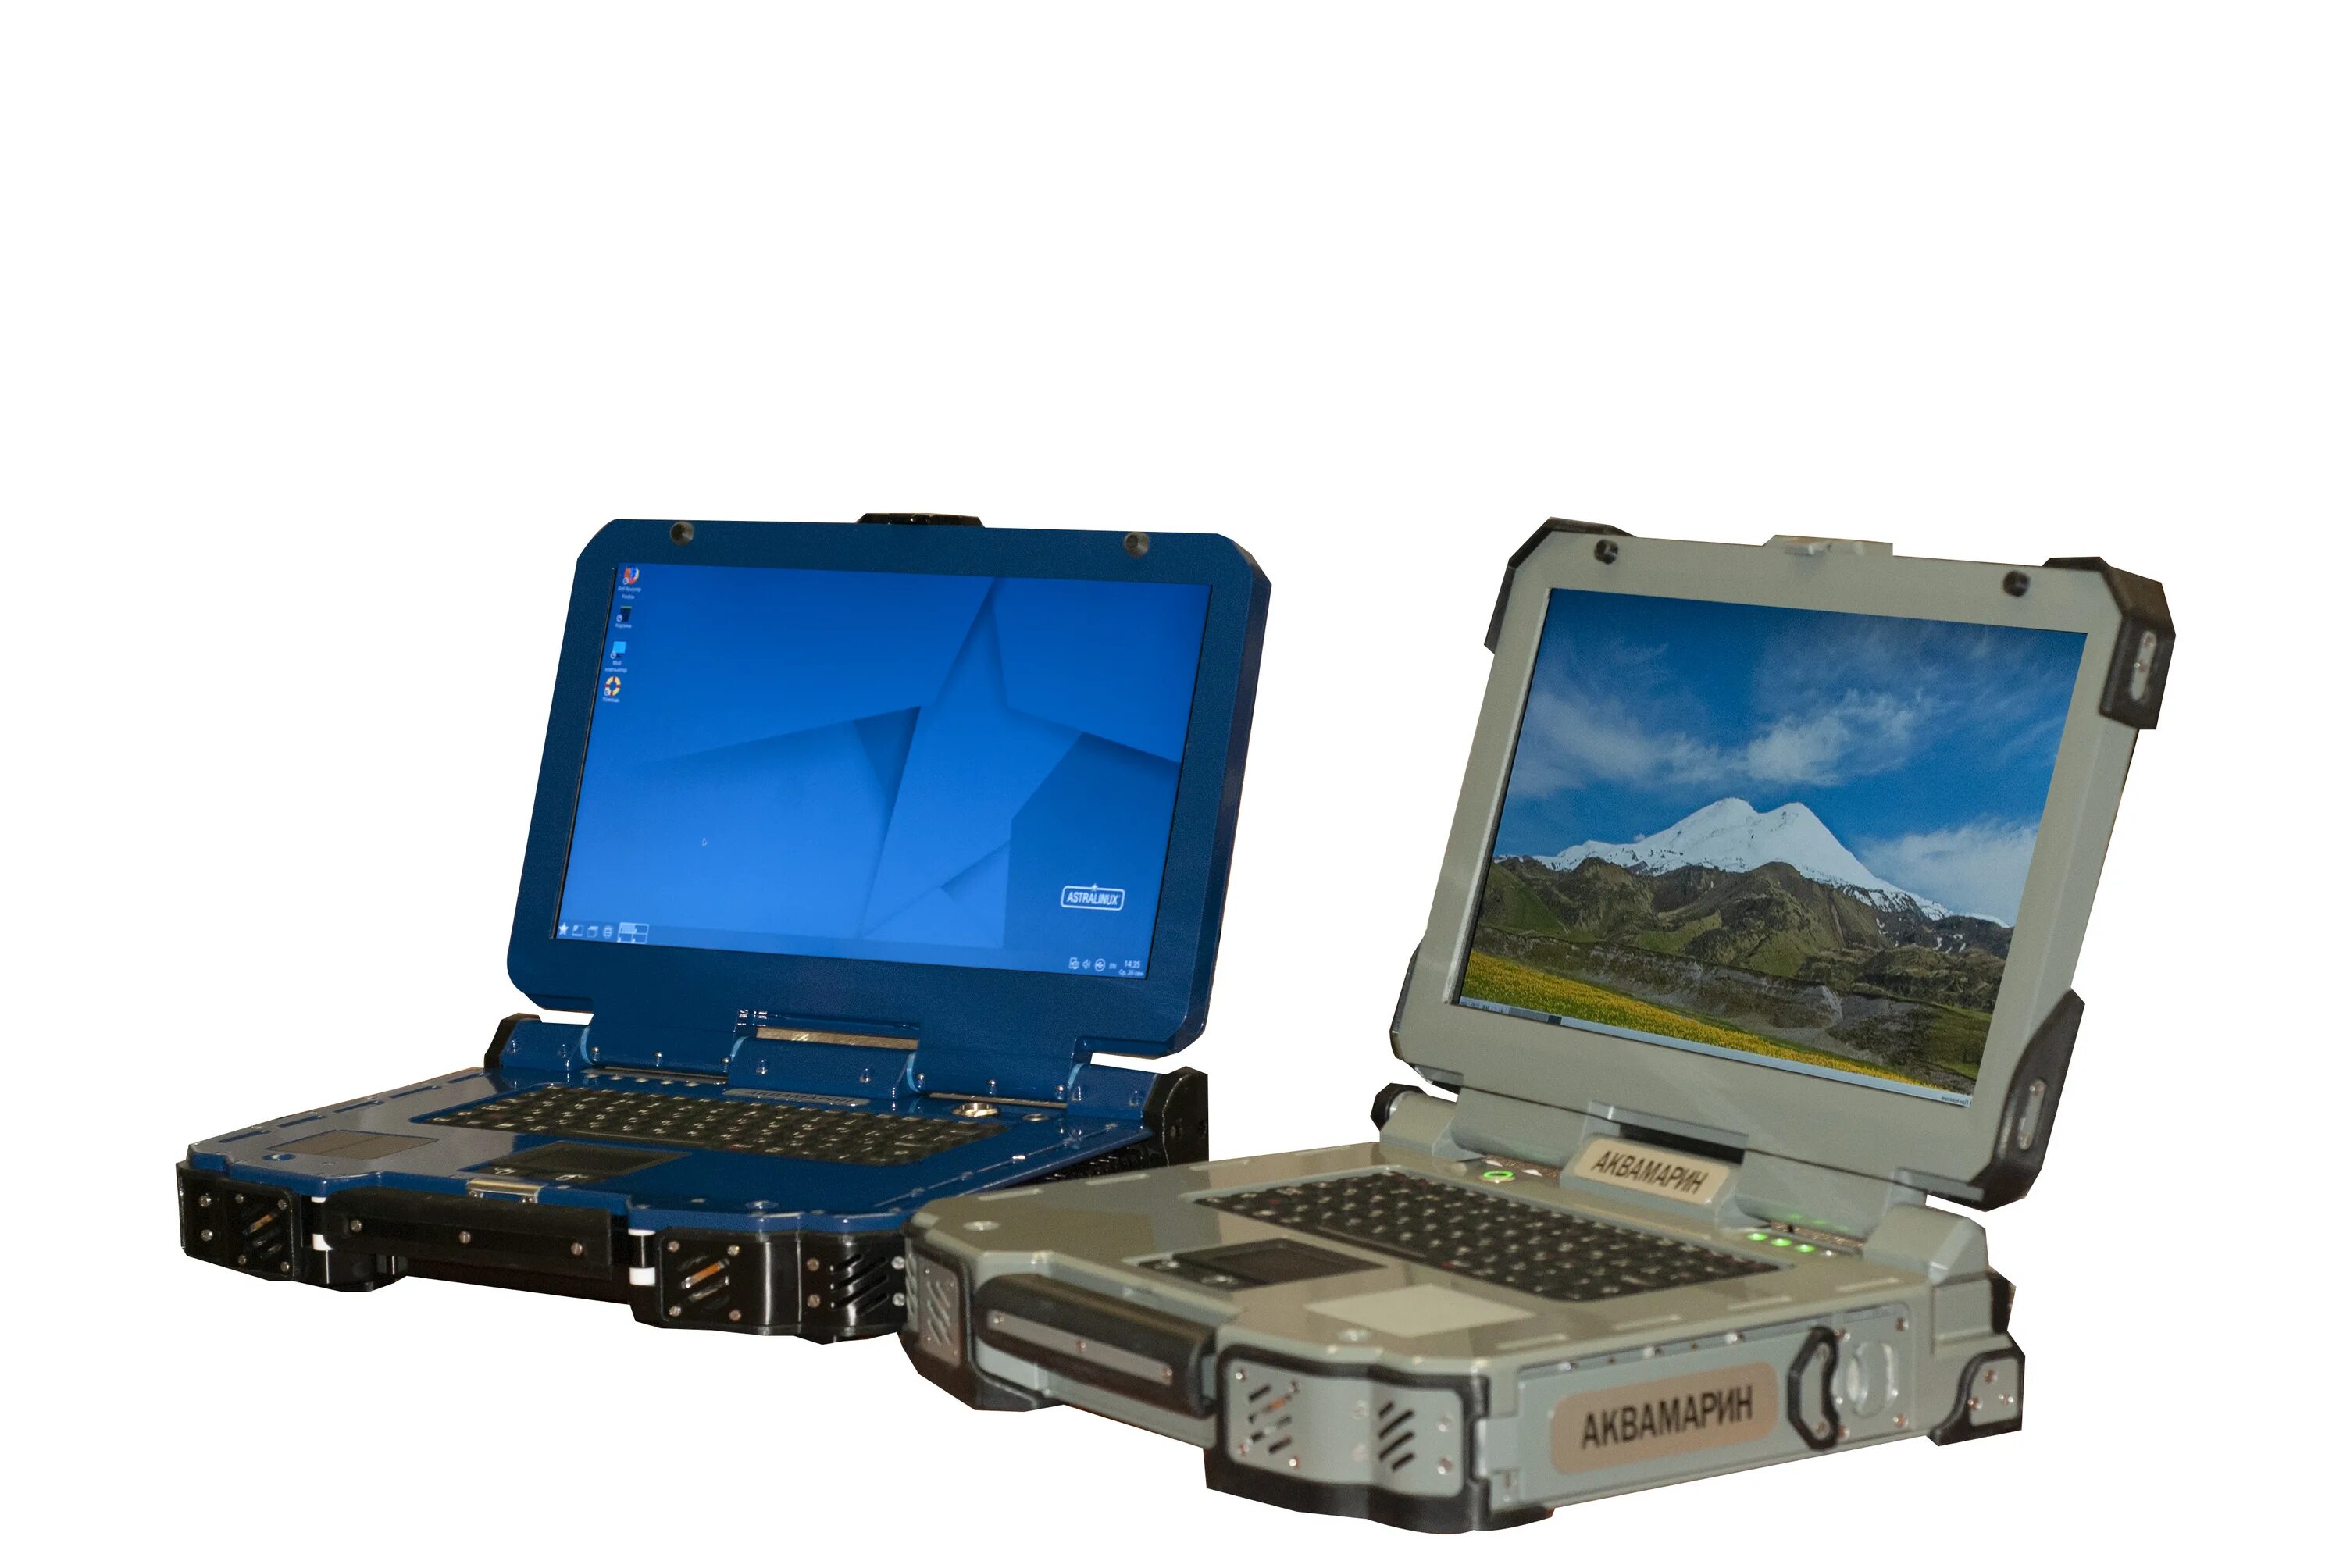 Ноутбук Аквамарин с процессором Эльбрус-1с+. Ноутбук на процессоре Эльбрус. Аквамарин Эльбрус защищённый ноутбук. Elbrus Notebook ip65.